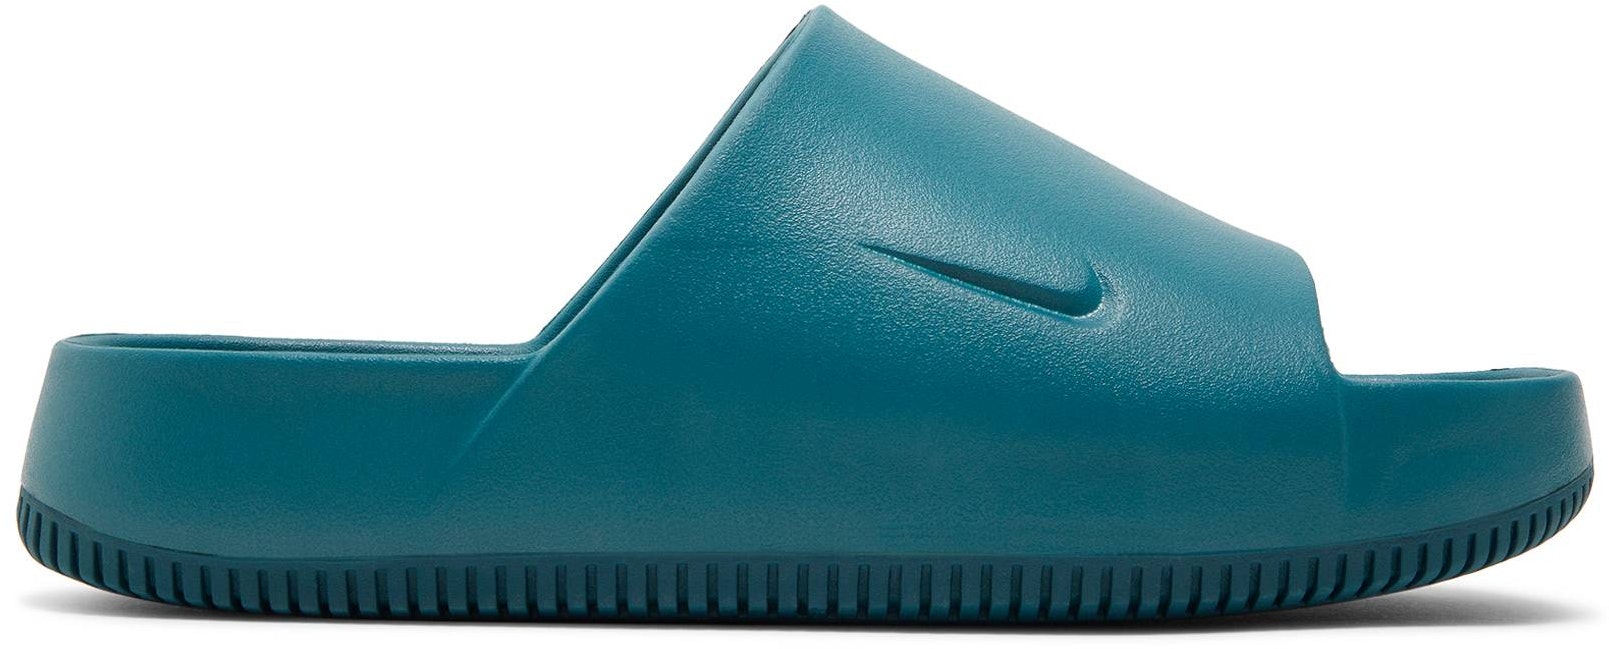 Nike Calm Slide 'Geode Teal' FD4116‑300 - FD4116-300 - Novelship